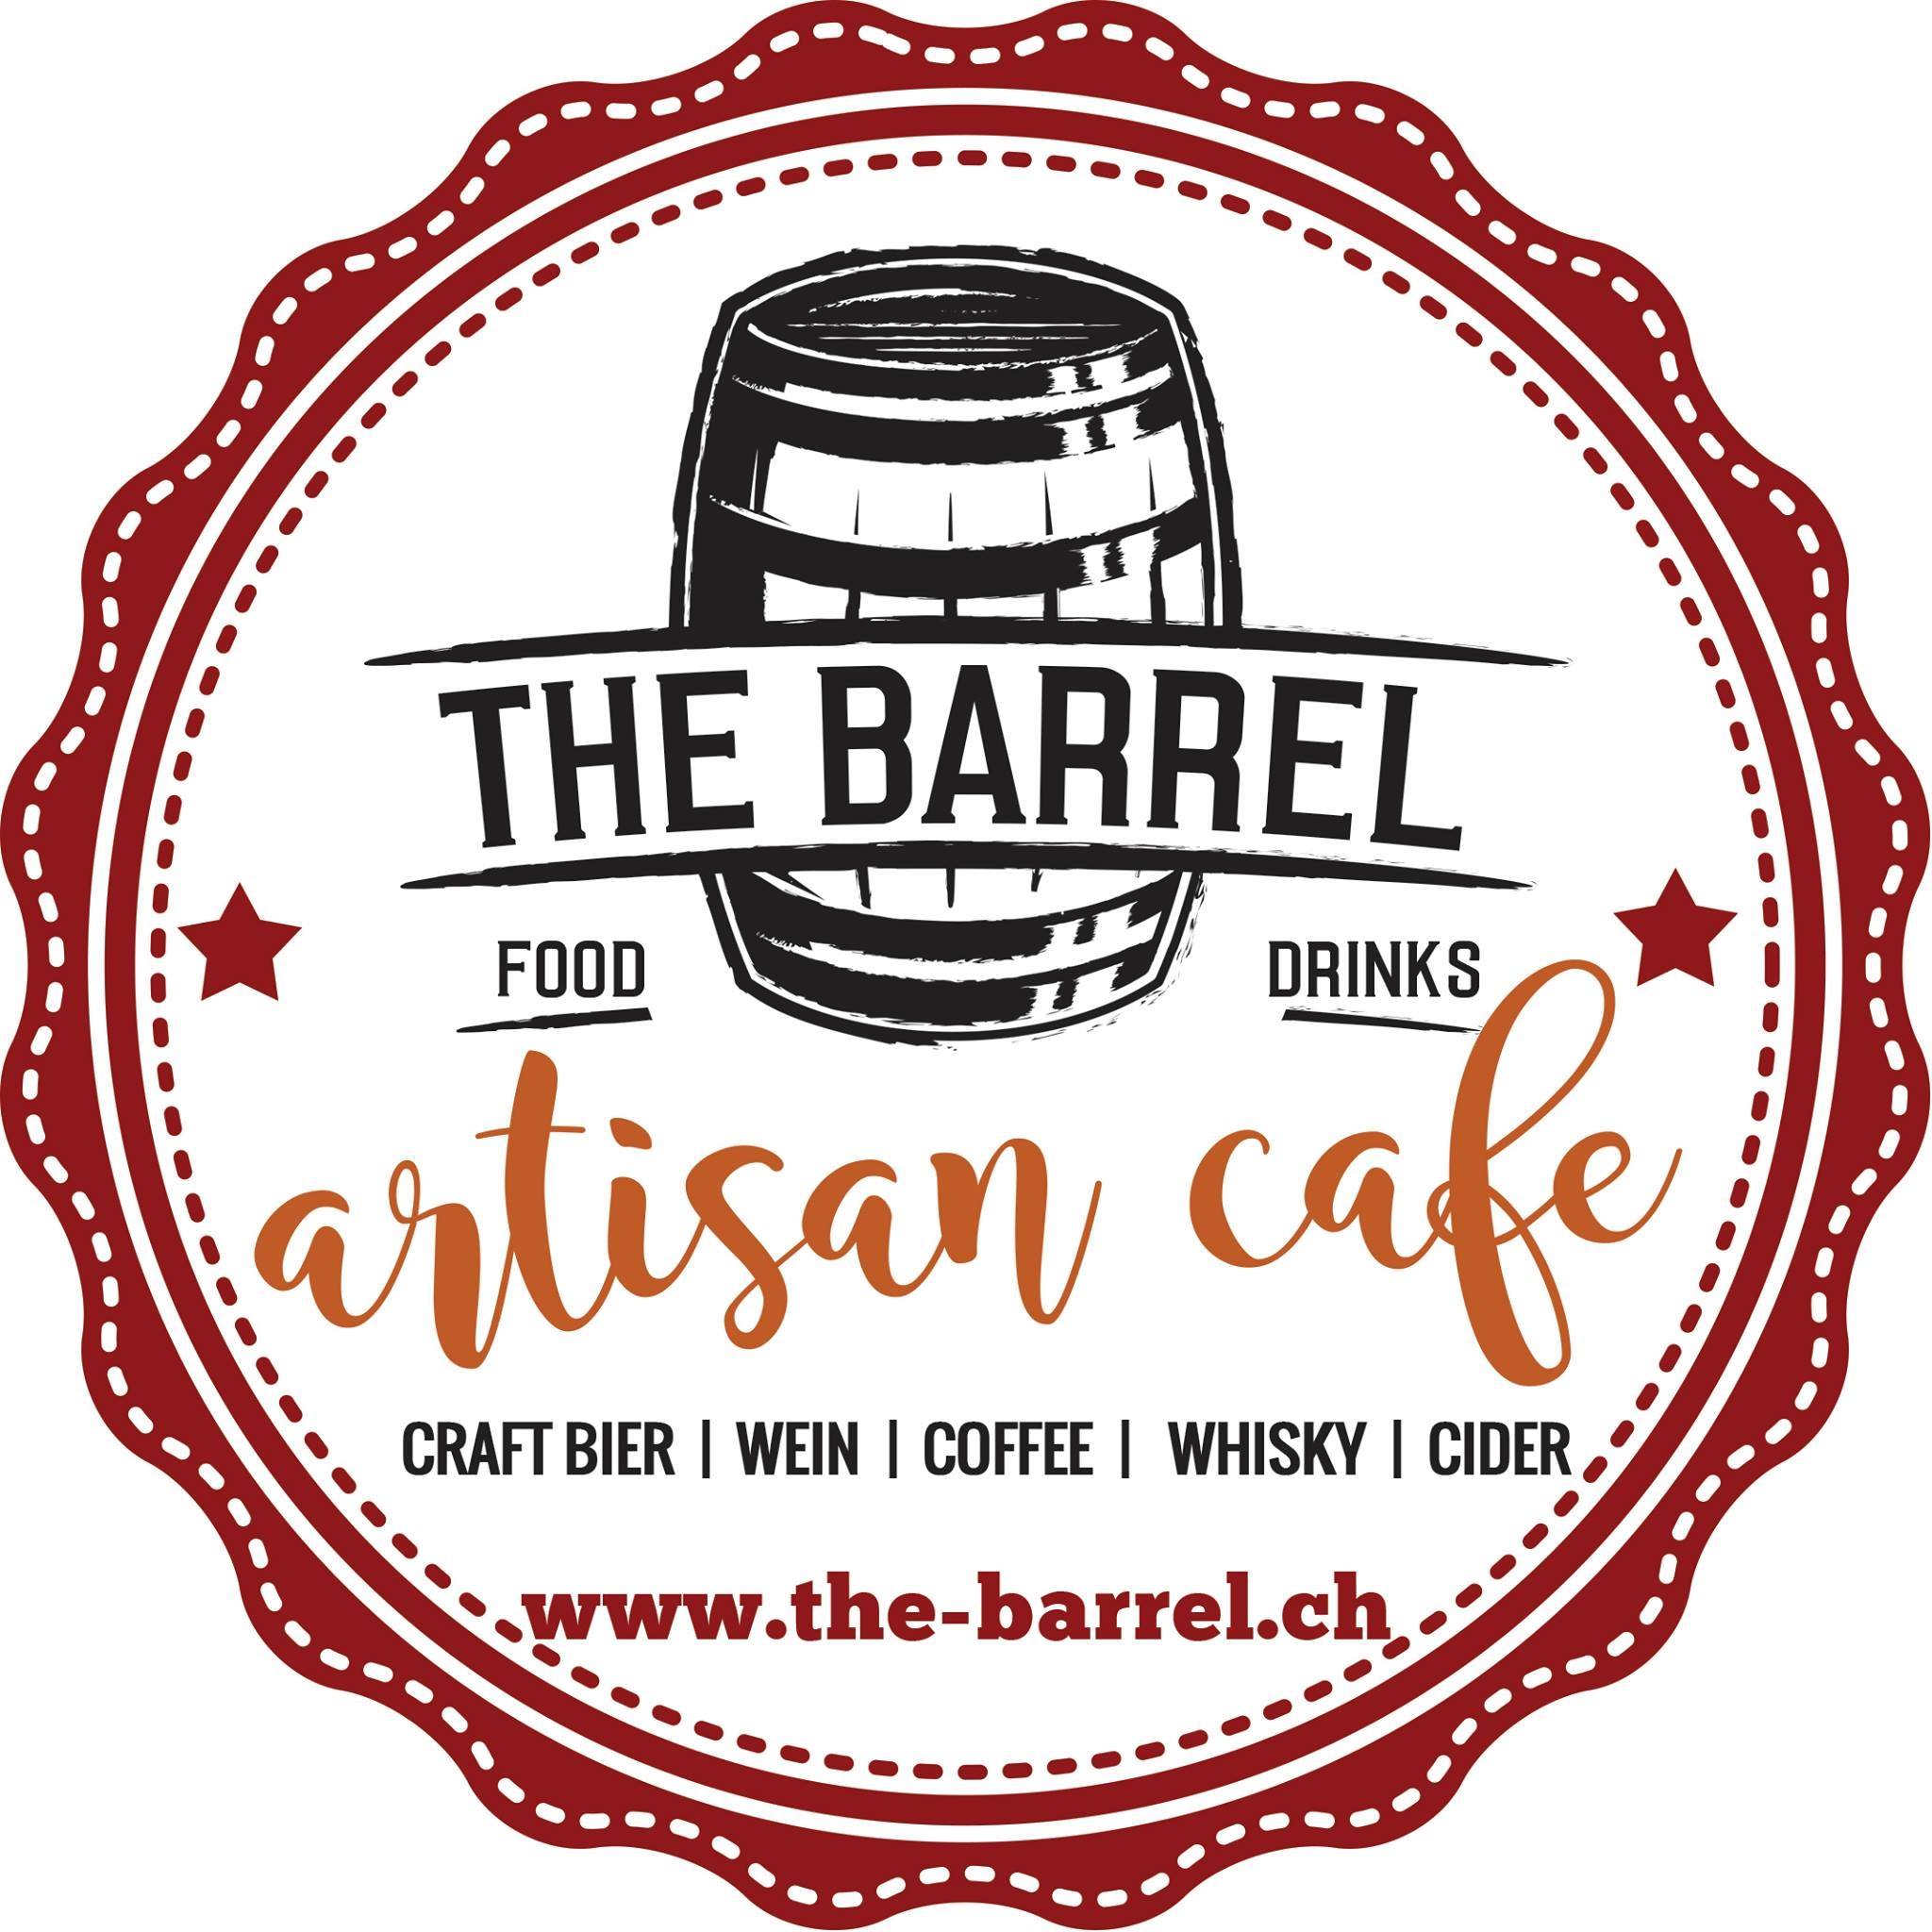 Logo of CraftBier-Shop.com (The Barrel)